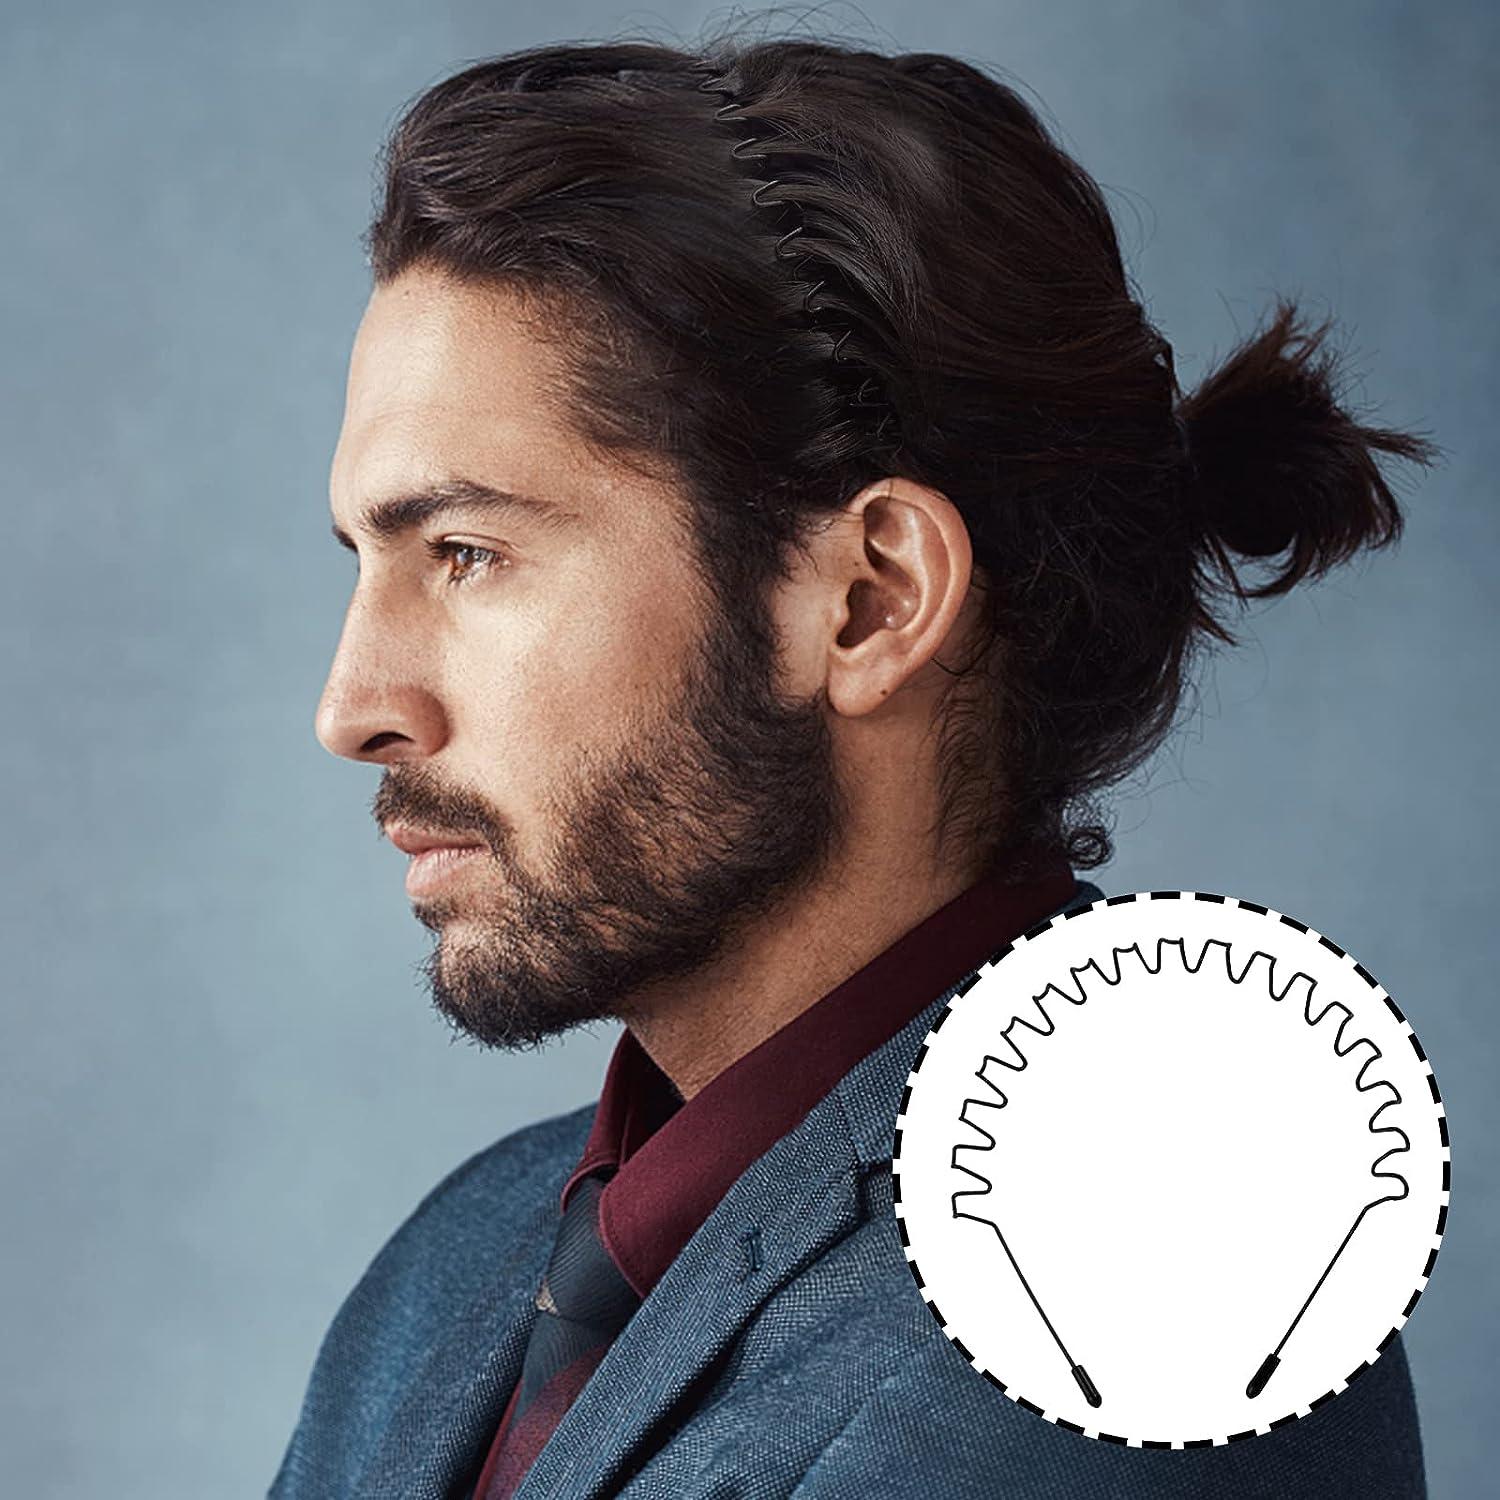 Men's Headbands for Long Hair  Headbands for Men's Hair – The